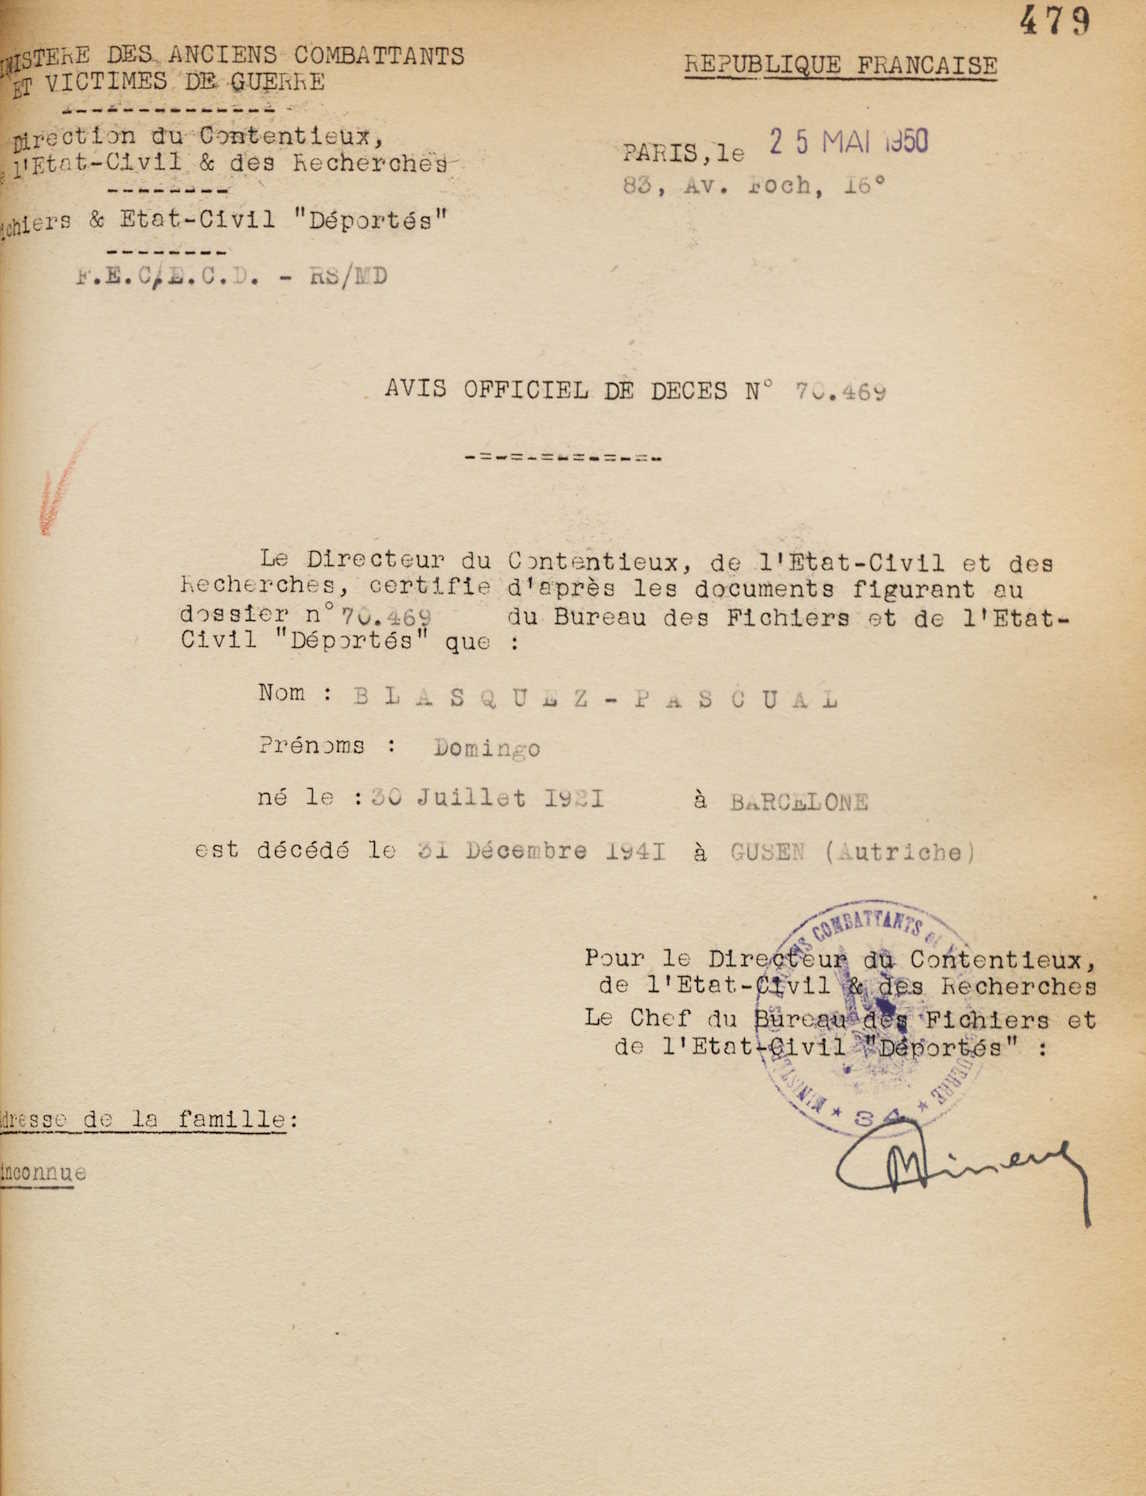 Certificat de defunció de Domingo Blázquez Pascual